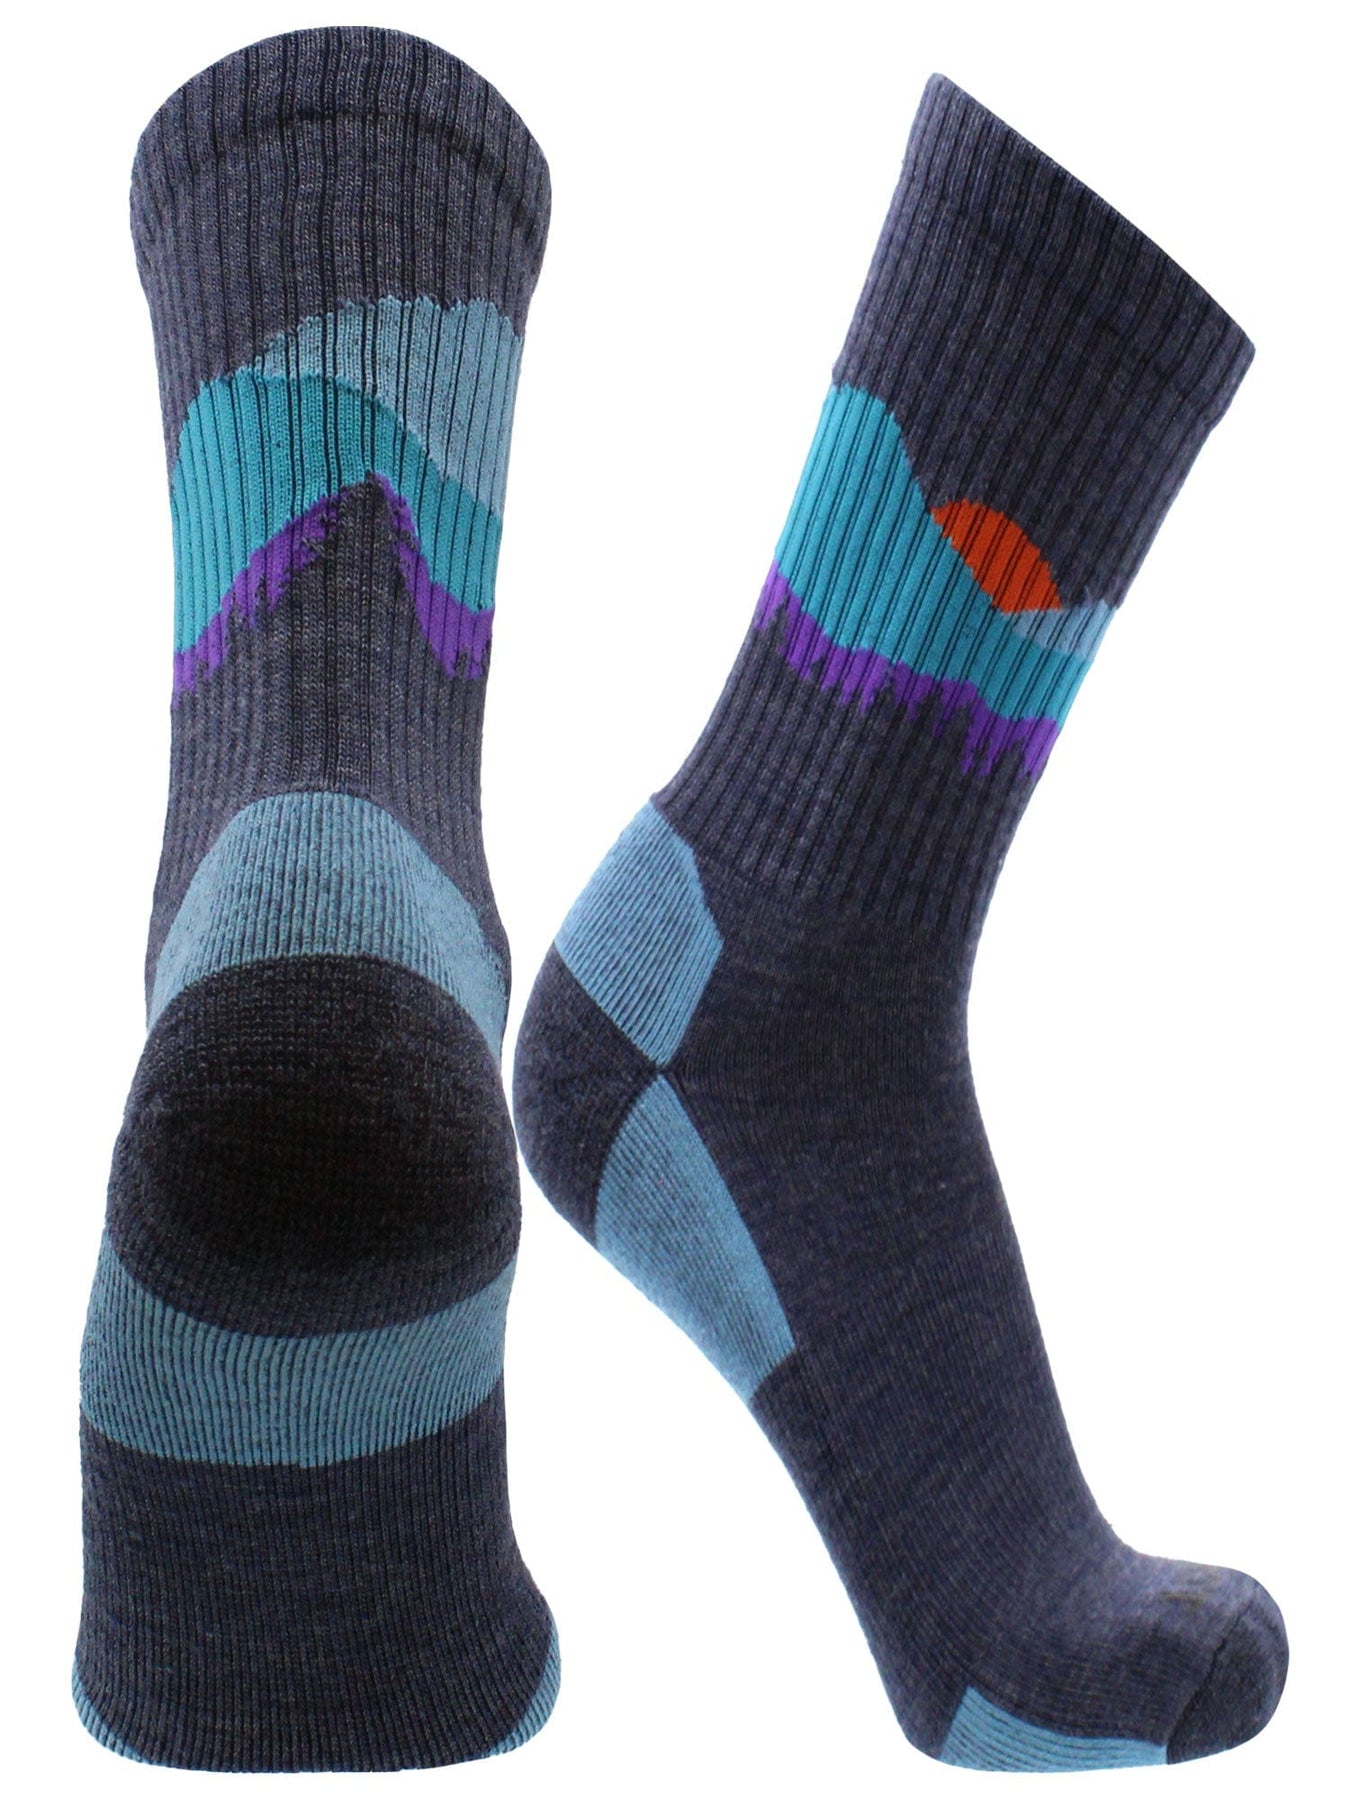 Walking Socks in Organic Wool. Green rib-knit adult walking socks